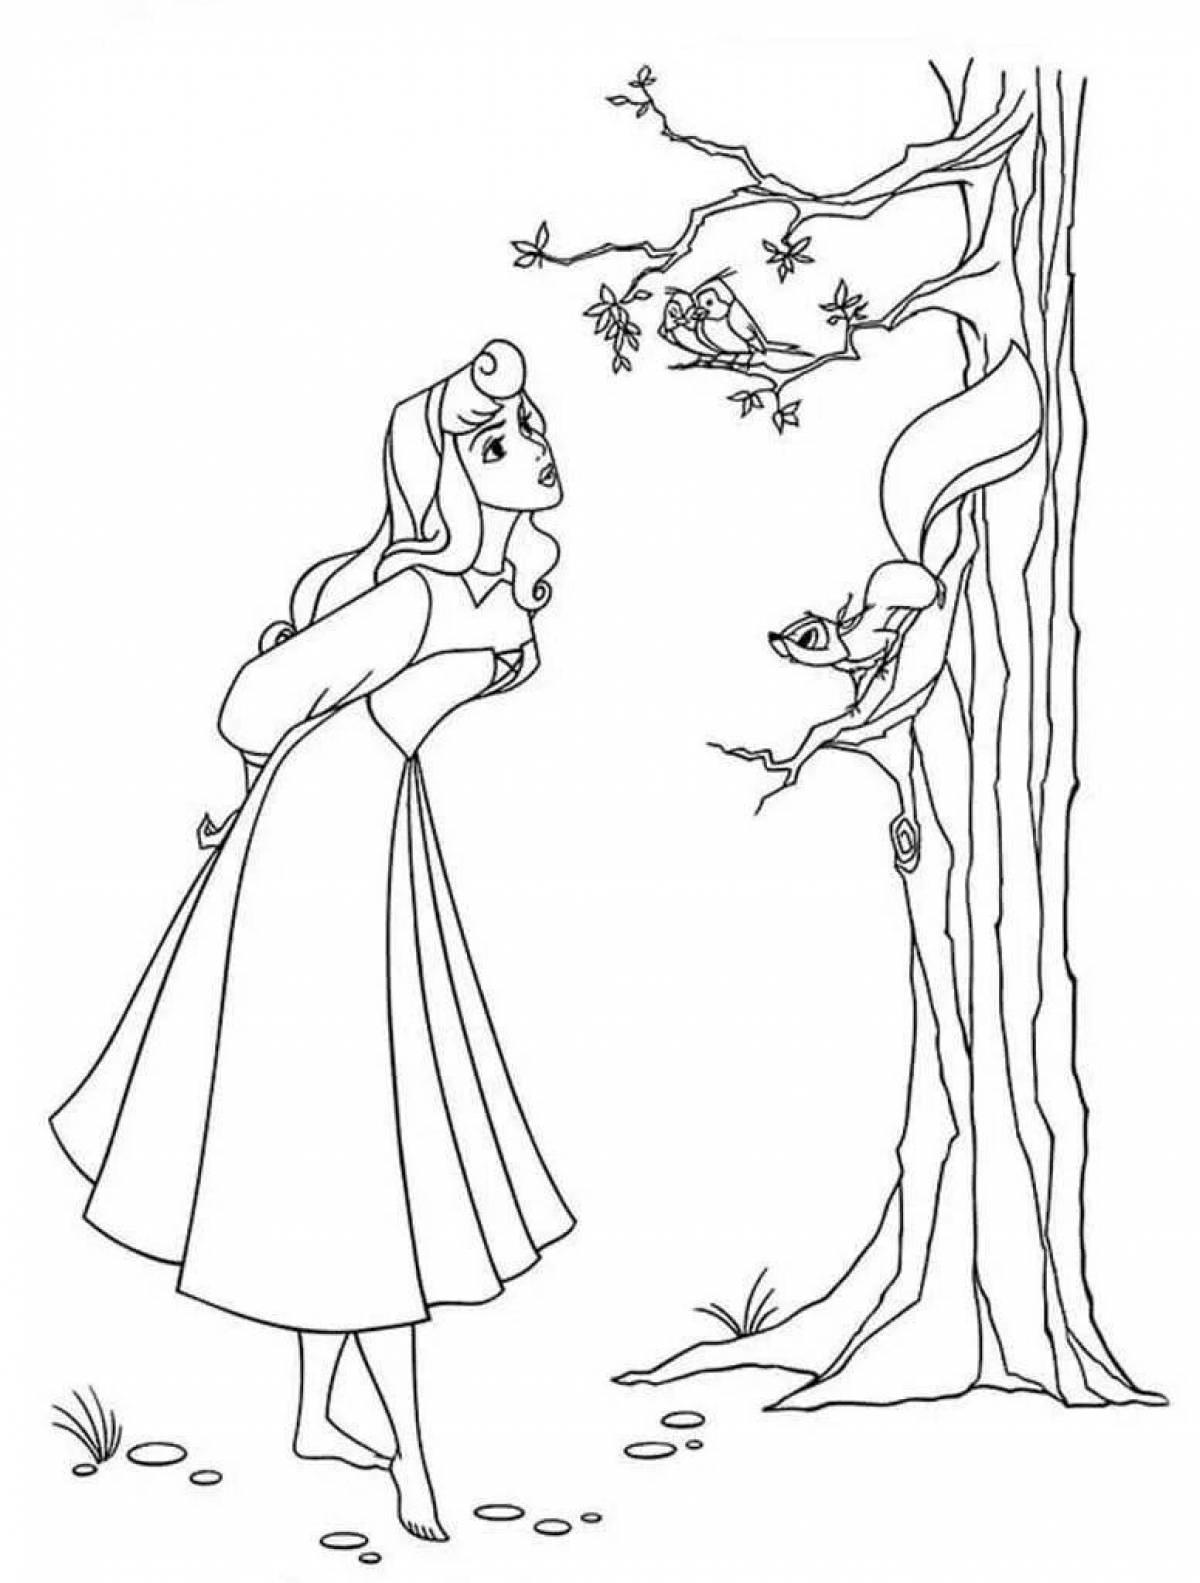 Причудливая раскраска девочки в лесу